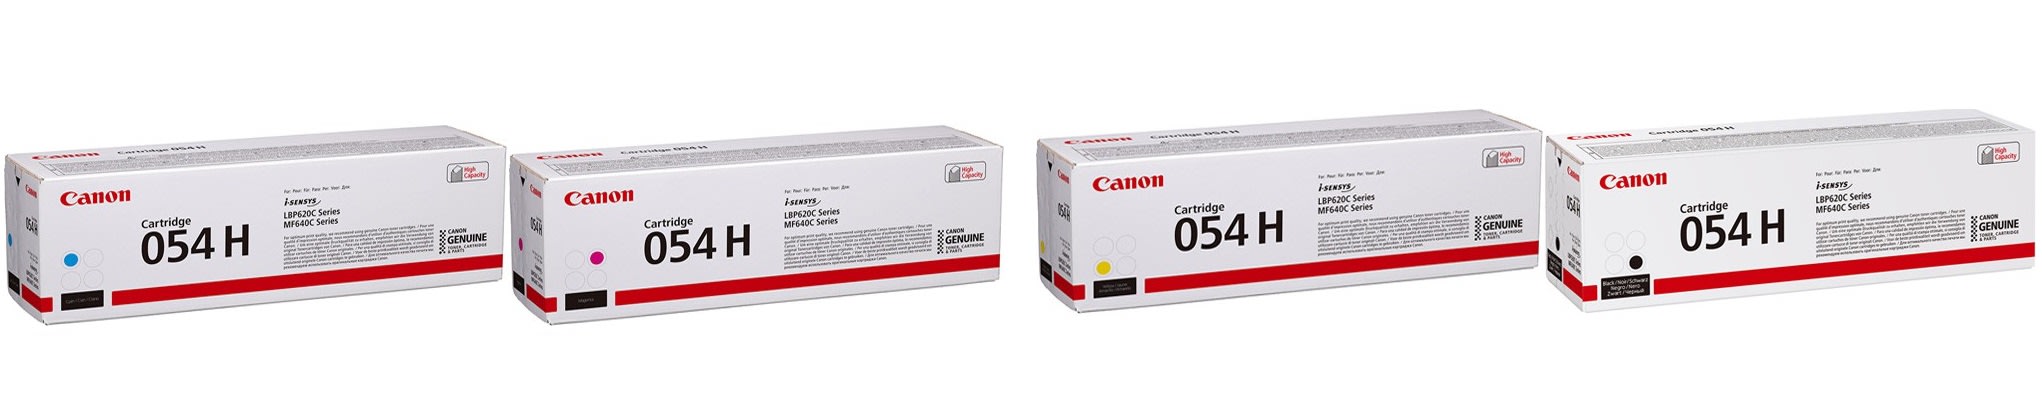 Картриджи Canon 054H для Canon i-Sensys LBP–621cw Купить комплект картриджей.